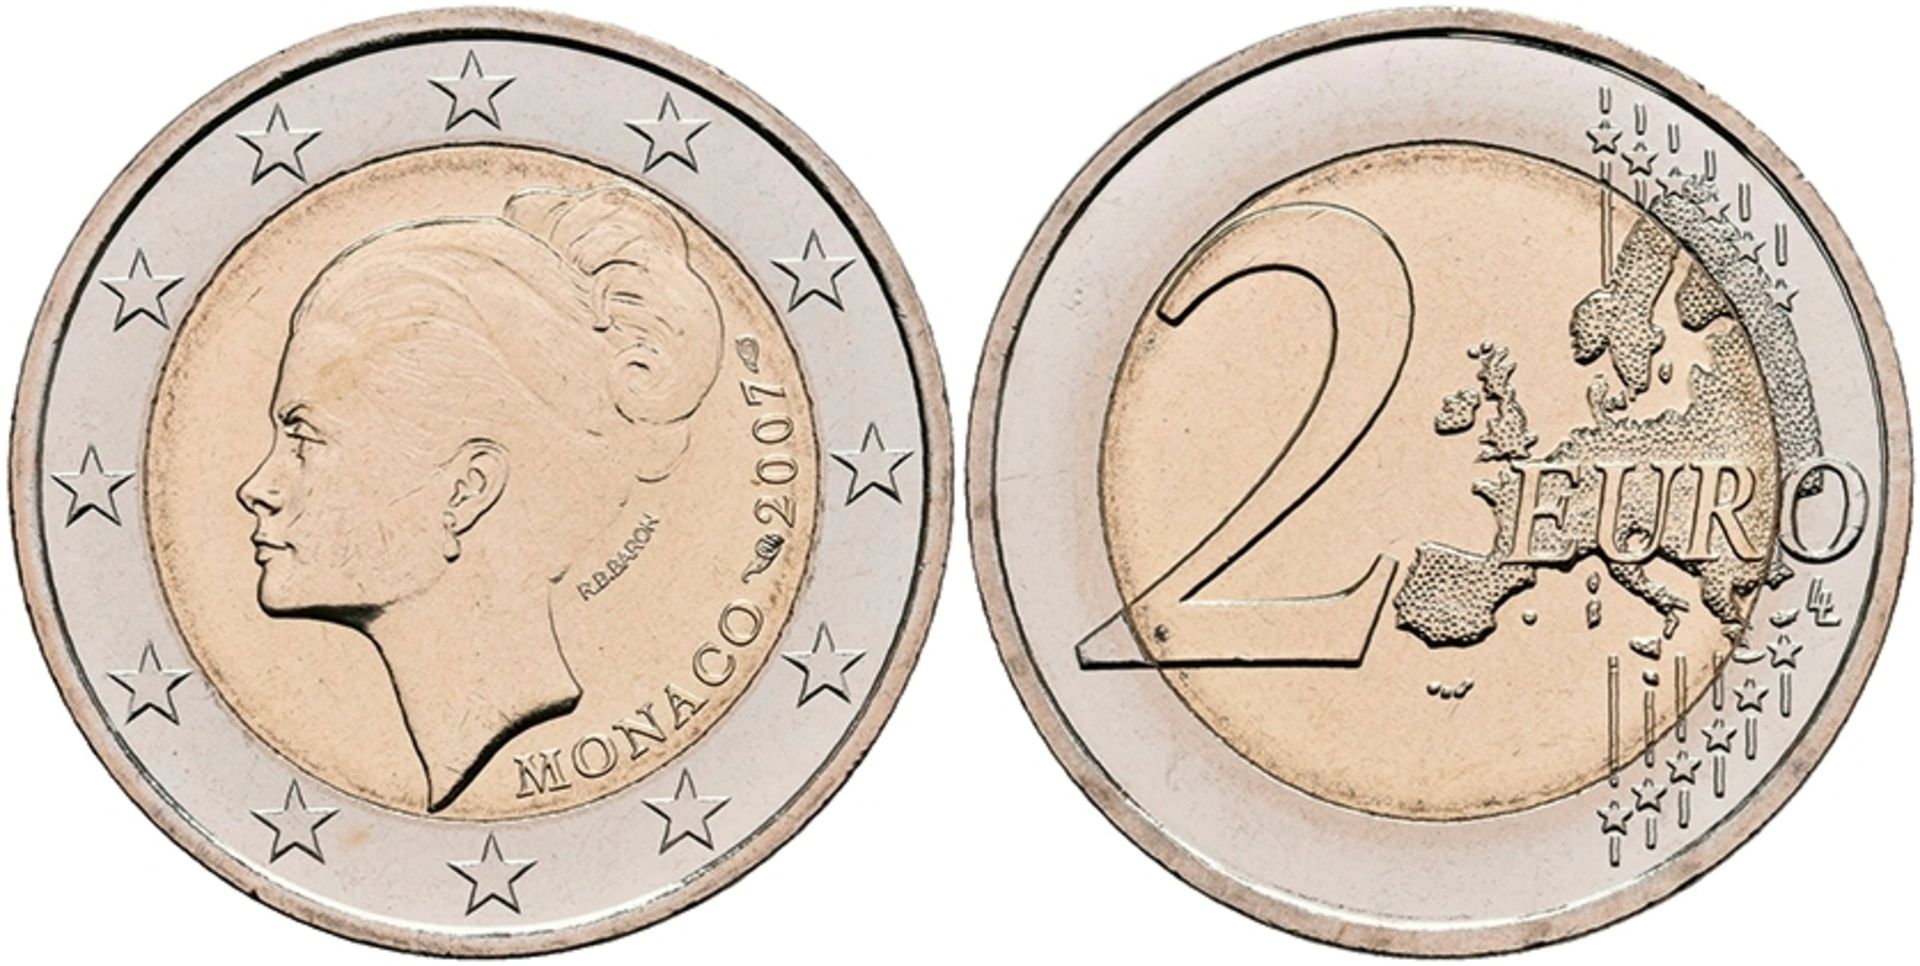 2 Euro, 2007, Grace Patricia Kelly zum 25. Todestag, KM 186, in Ausgabeschatulle, vz-st.